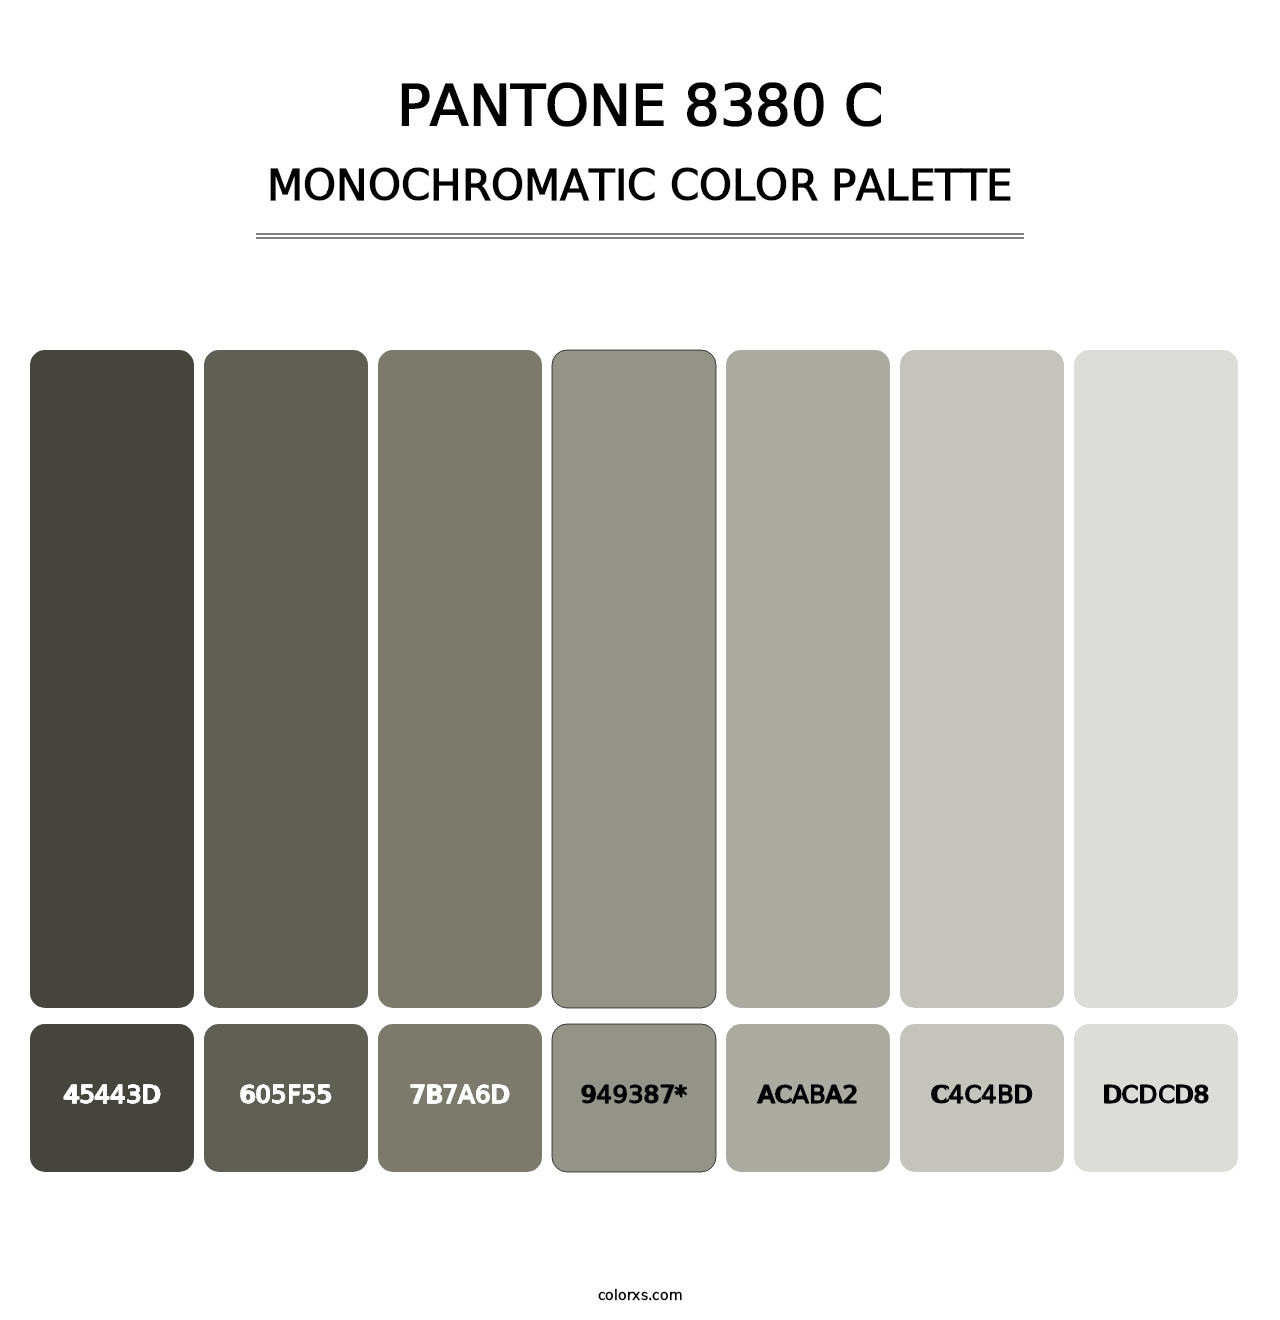 PANTONE 8380 C - Monochromatic Color Palette